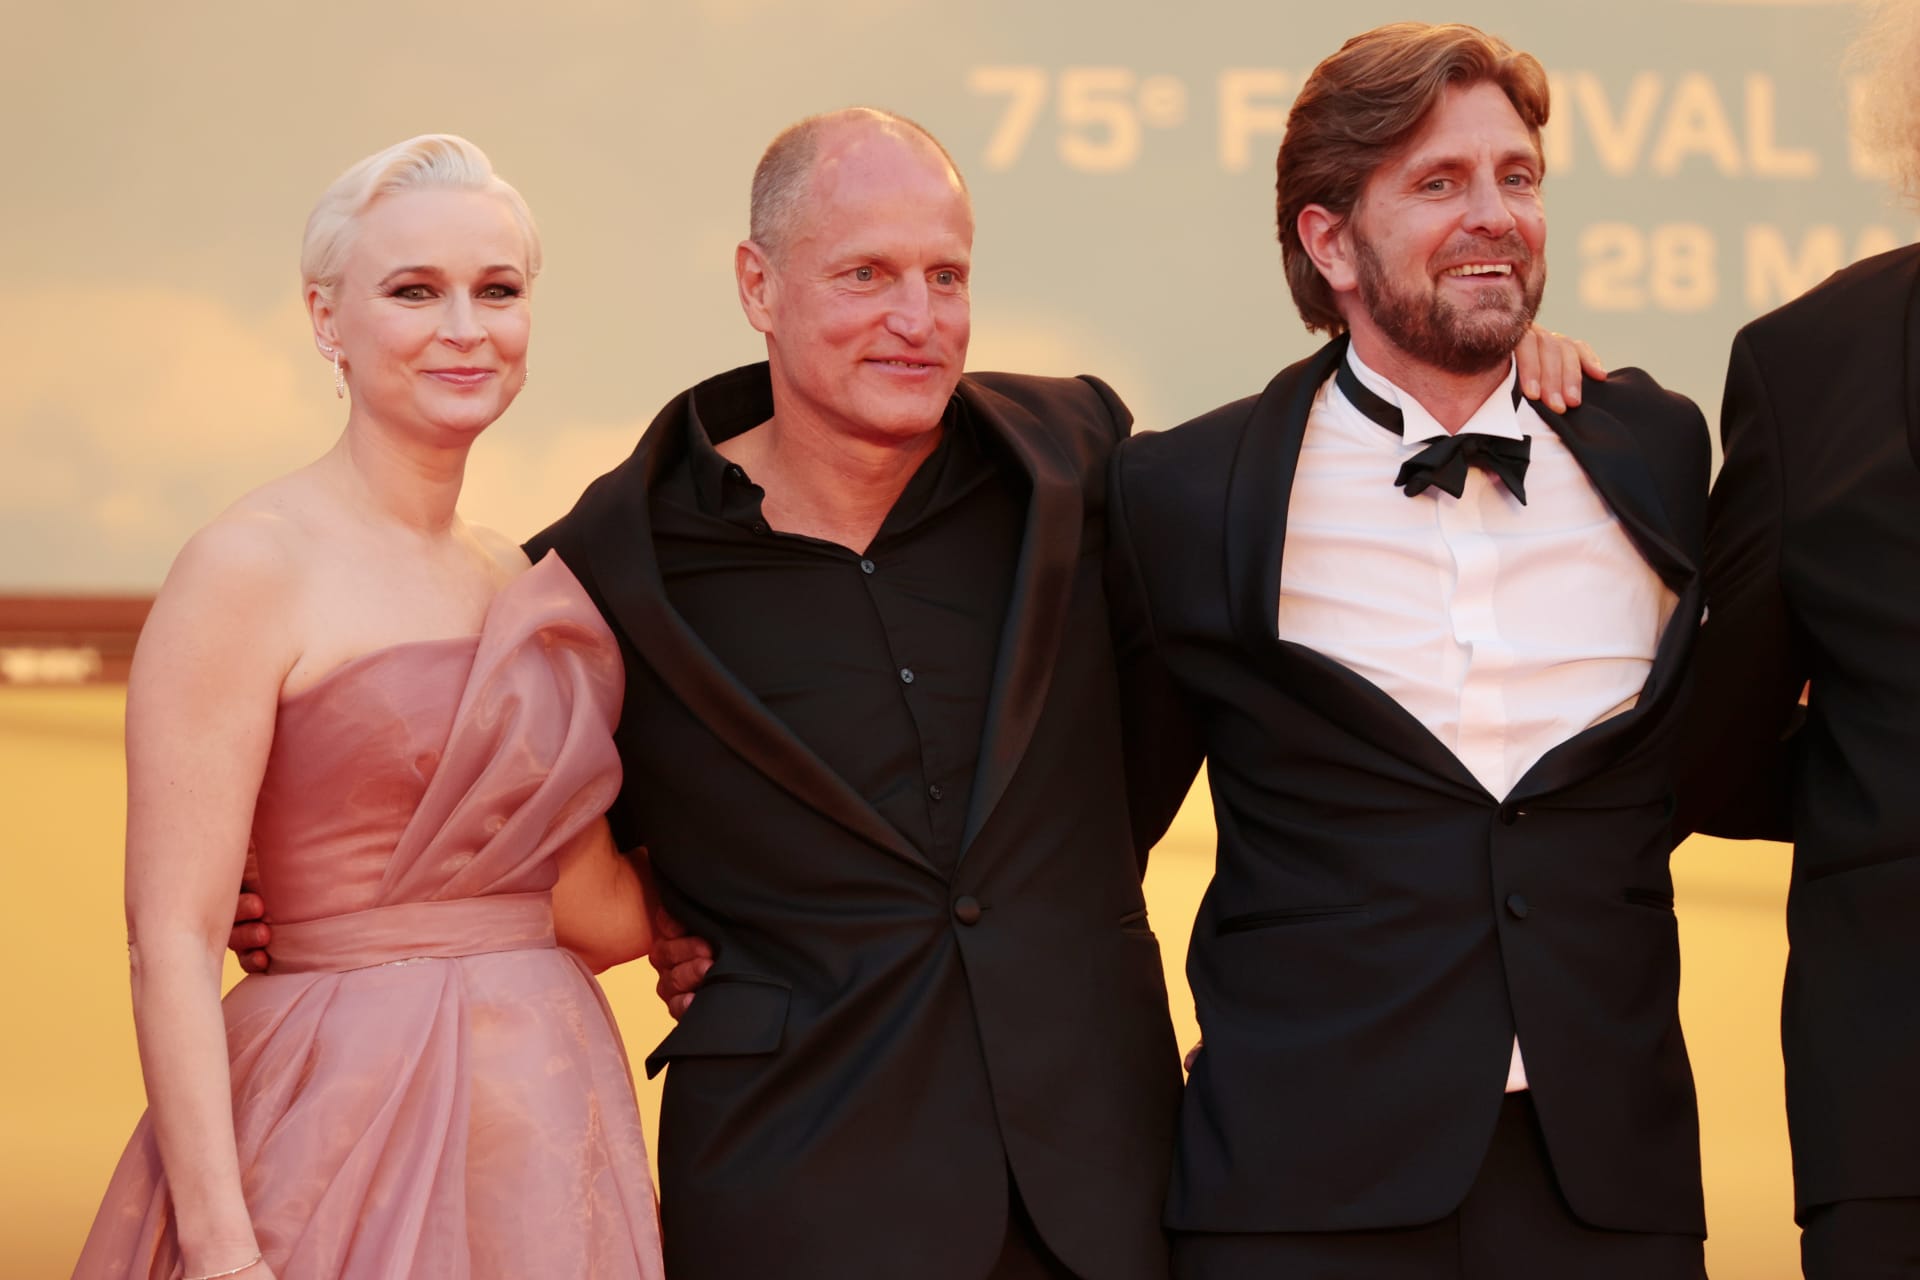 Herečka Vicki Berlinová, herec Woody Harrelson a režisér Ruben Östlund odcházejí z promítání svého vítězného snímku Triangle of Sadness.